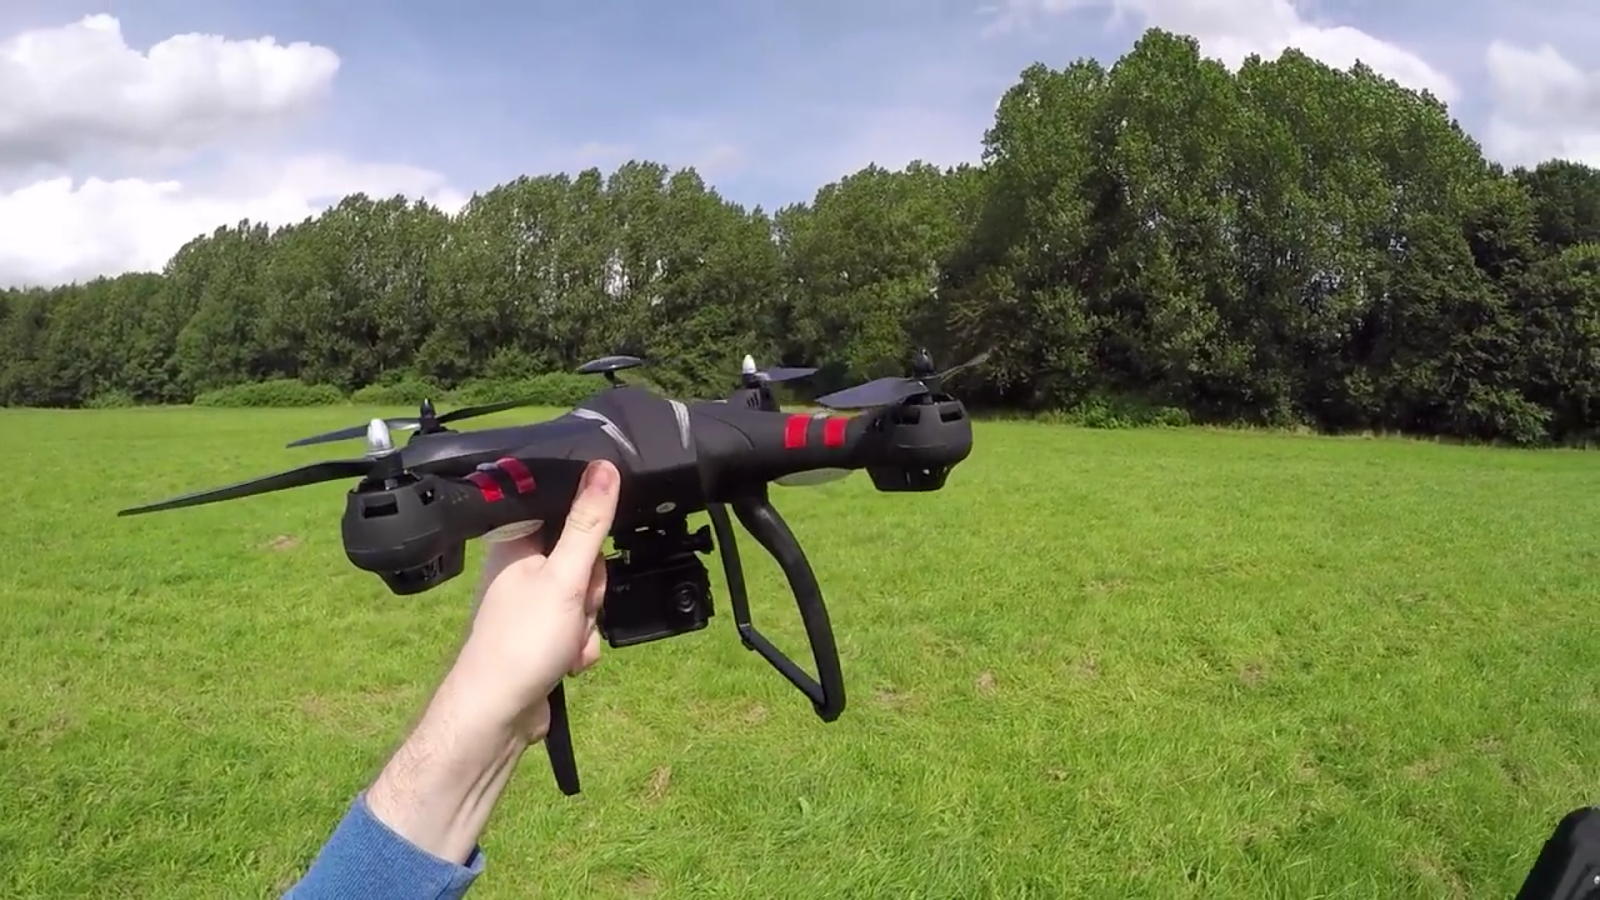 Bayangtoys X21 Drone Brushless Terbaru Dengan Harga Murah 